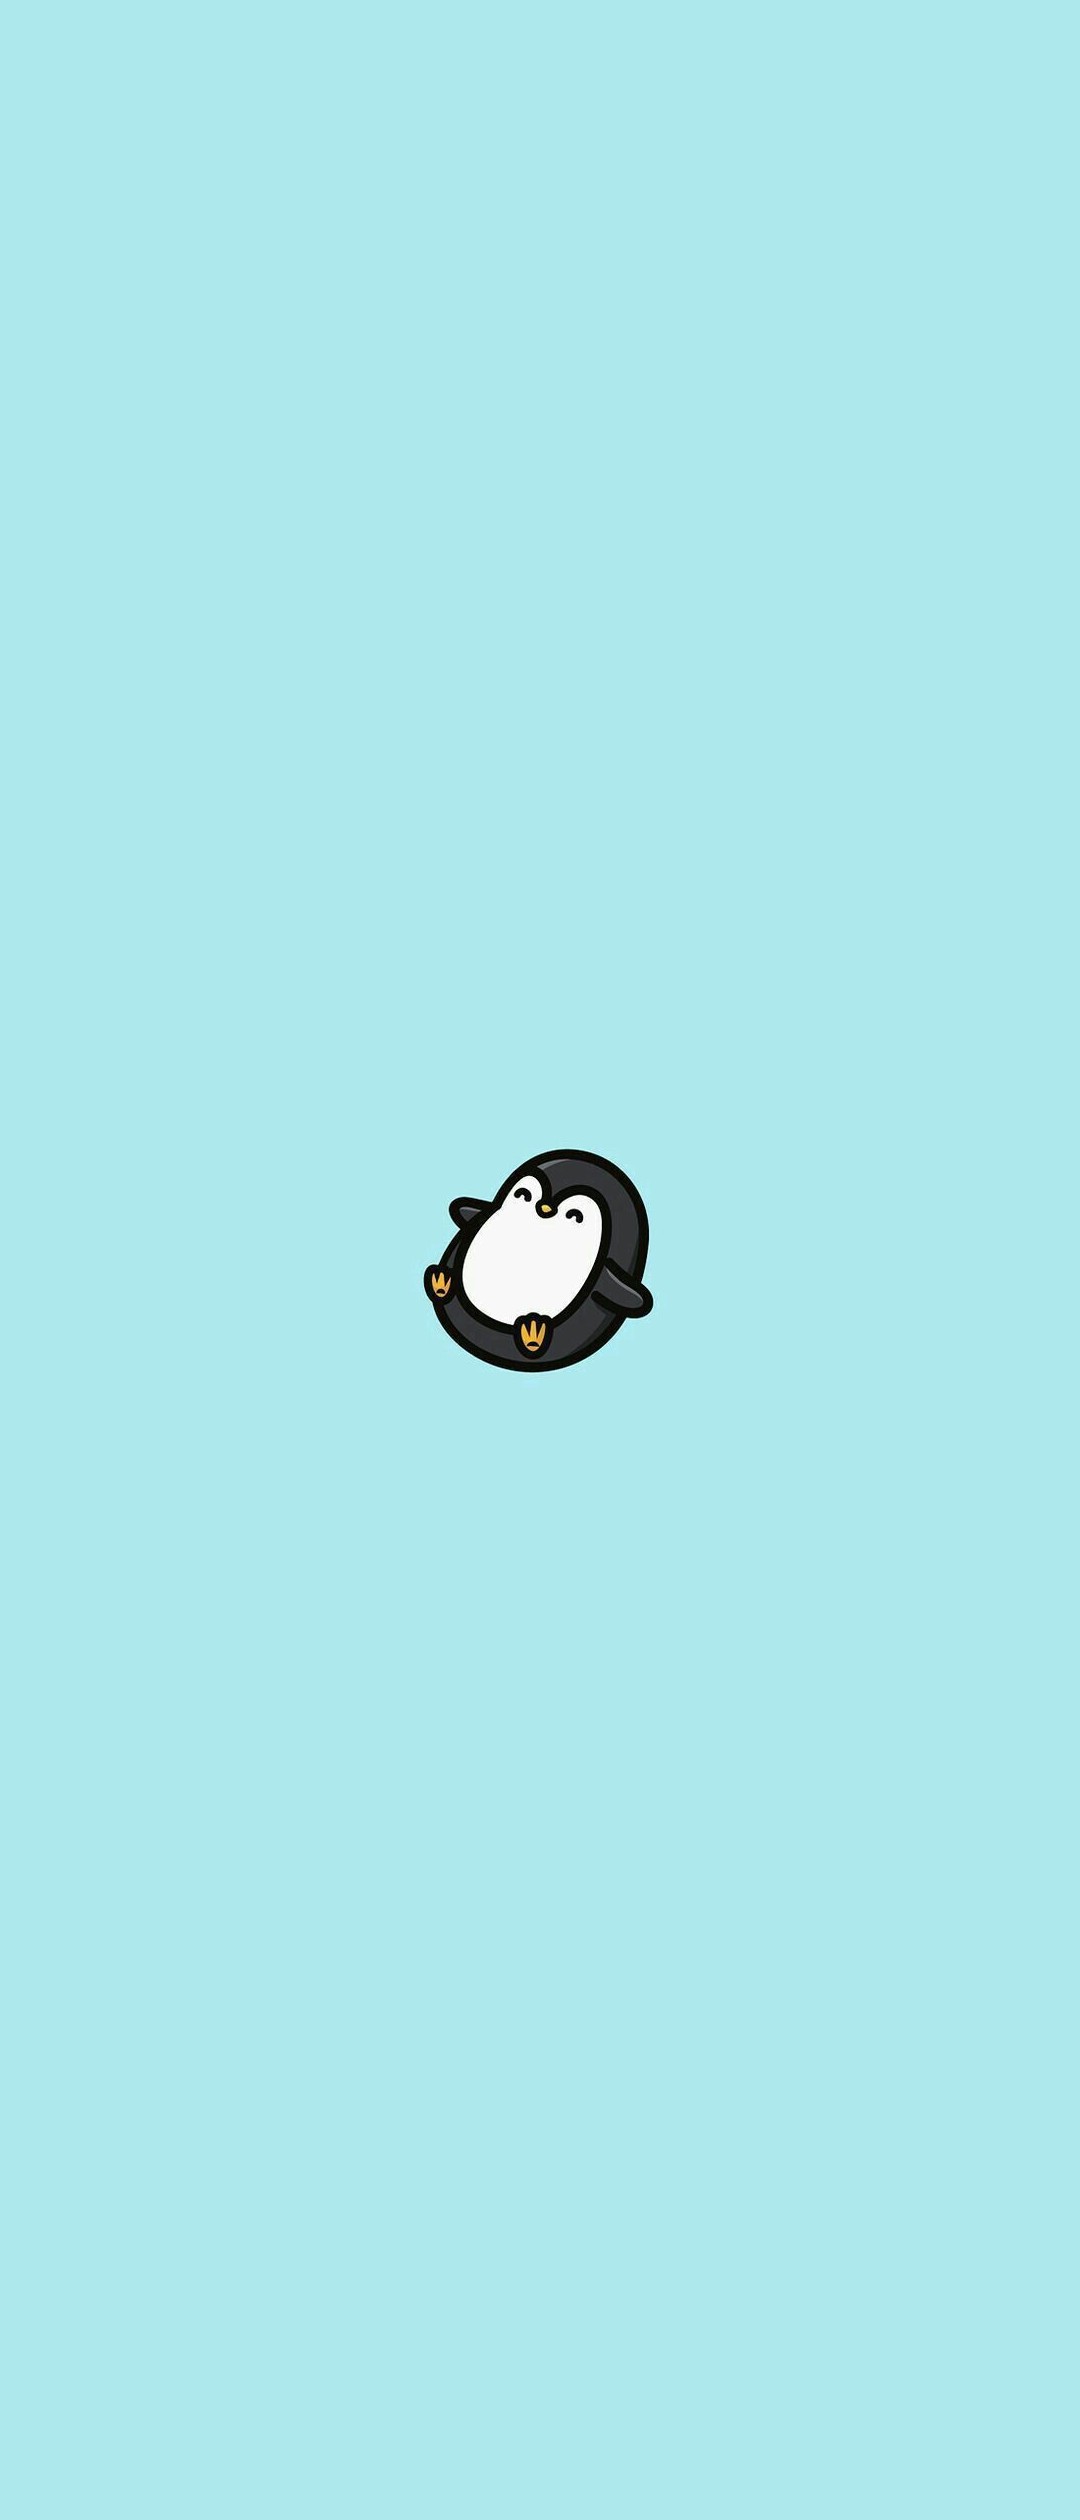 99以上 可愛い ペンギン の イラスト Apixtursaewloyj